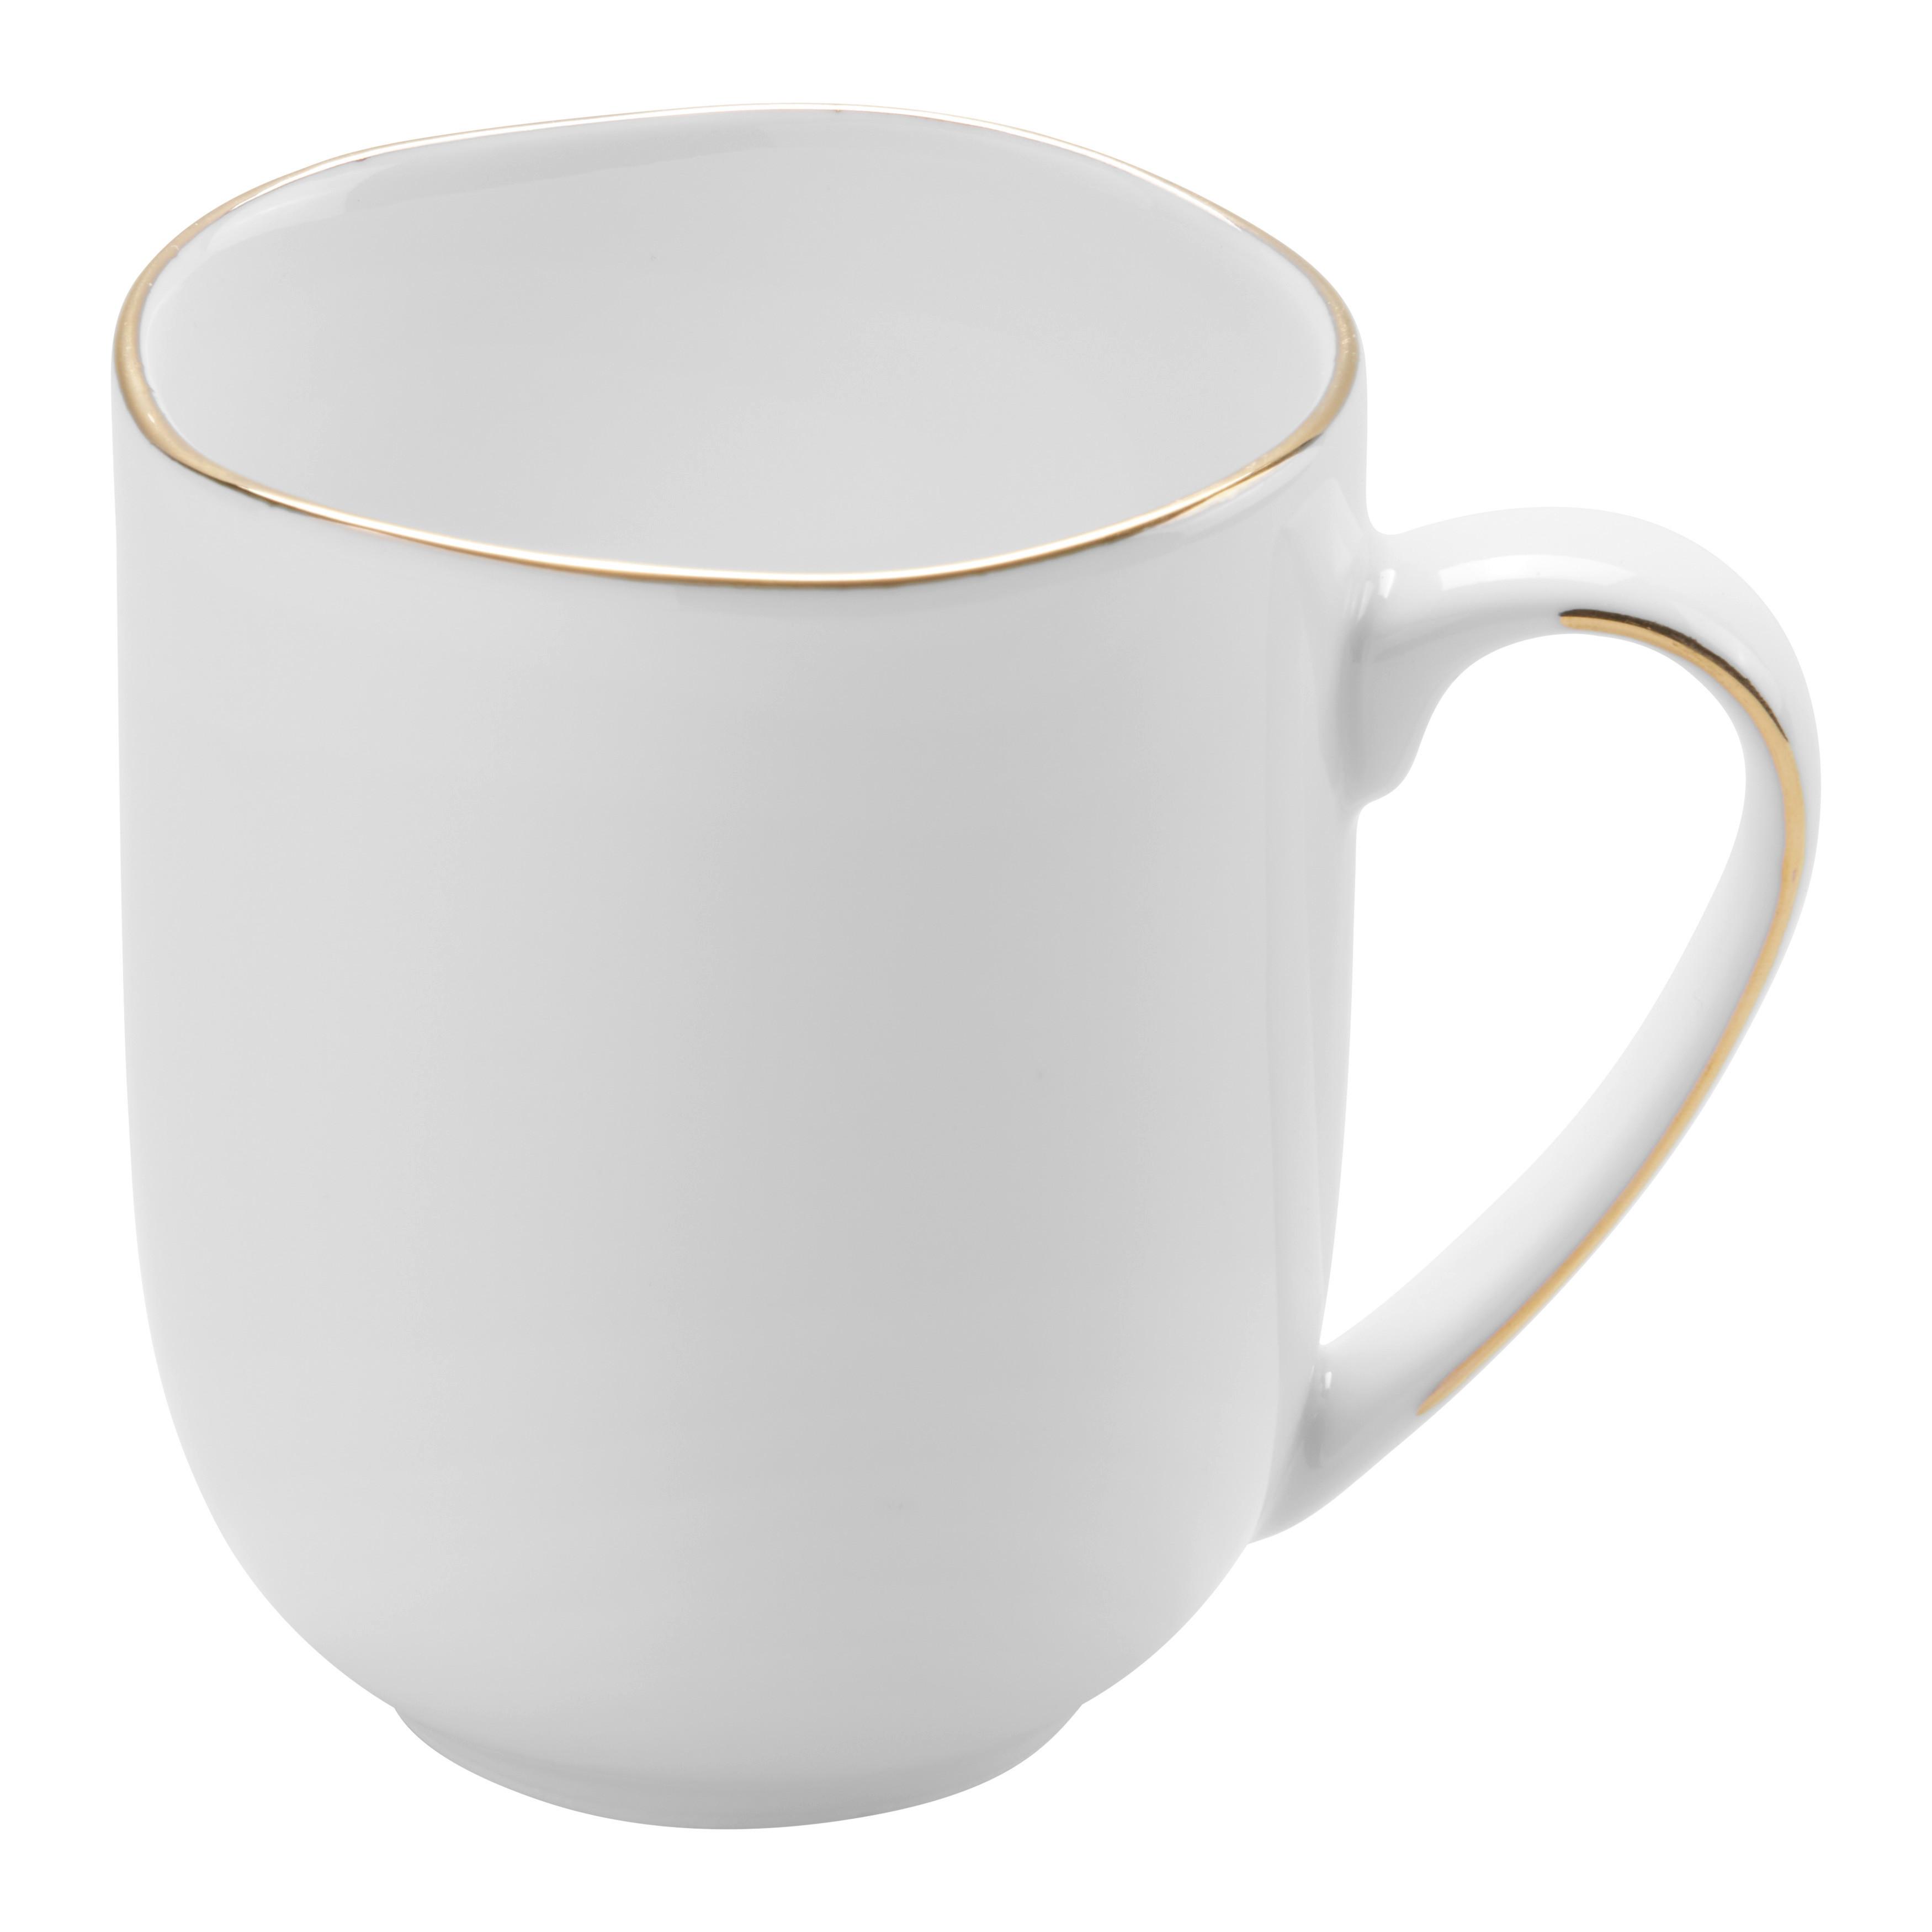 Kaffeebecher Onix aus Porzellan ca. 350ml - Weiss/Goldfarben, Modern, Keramik (350ml) - Premium Living